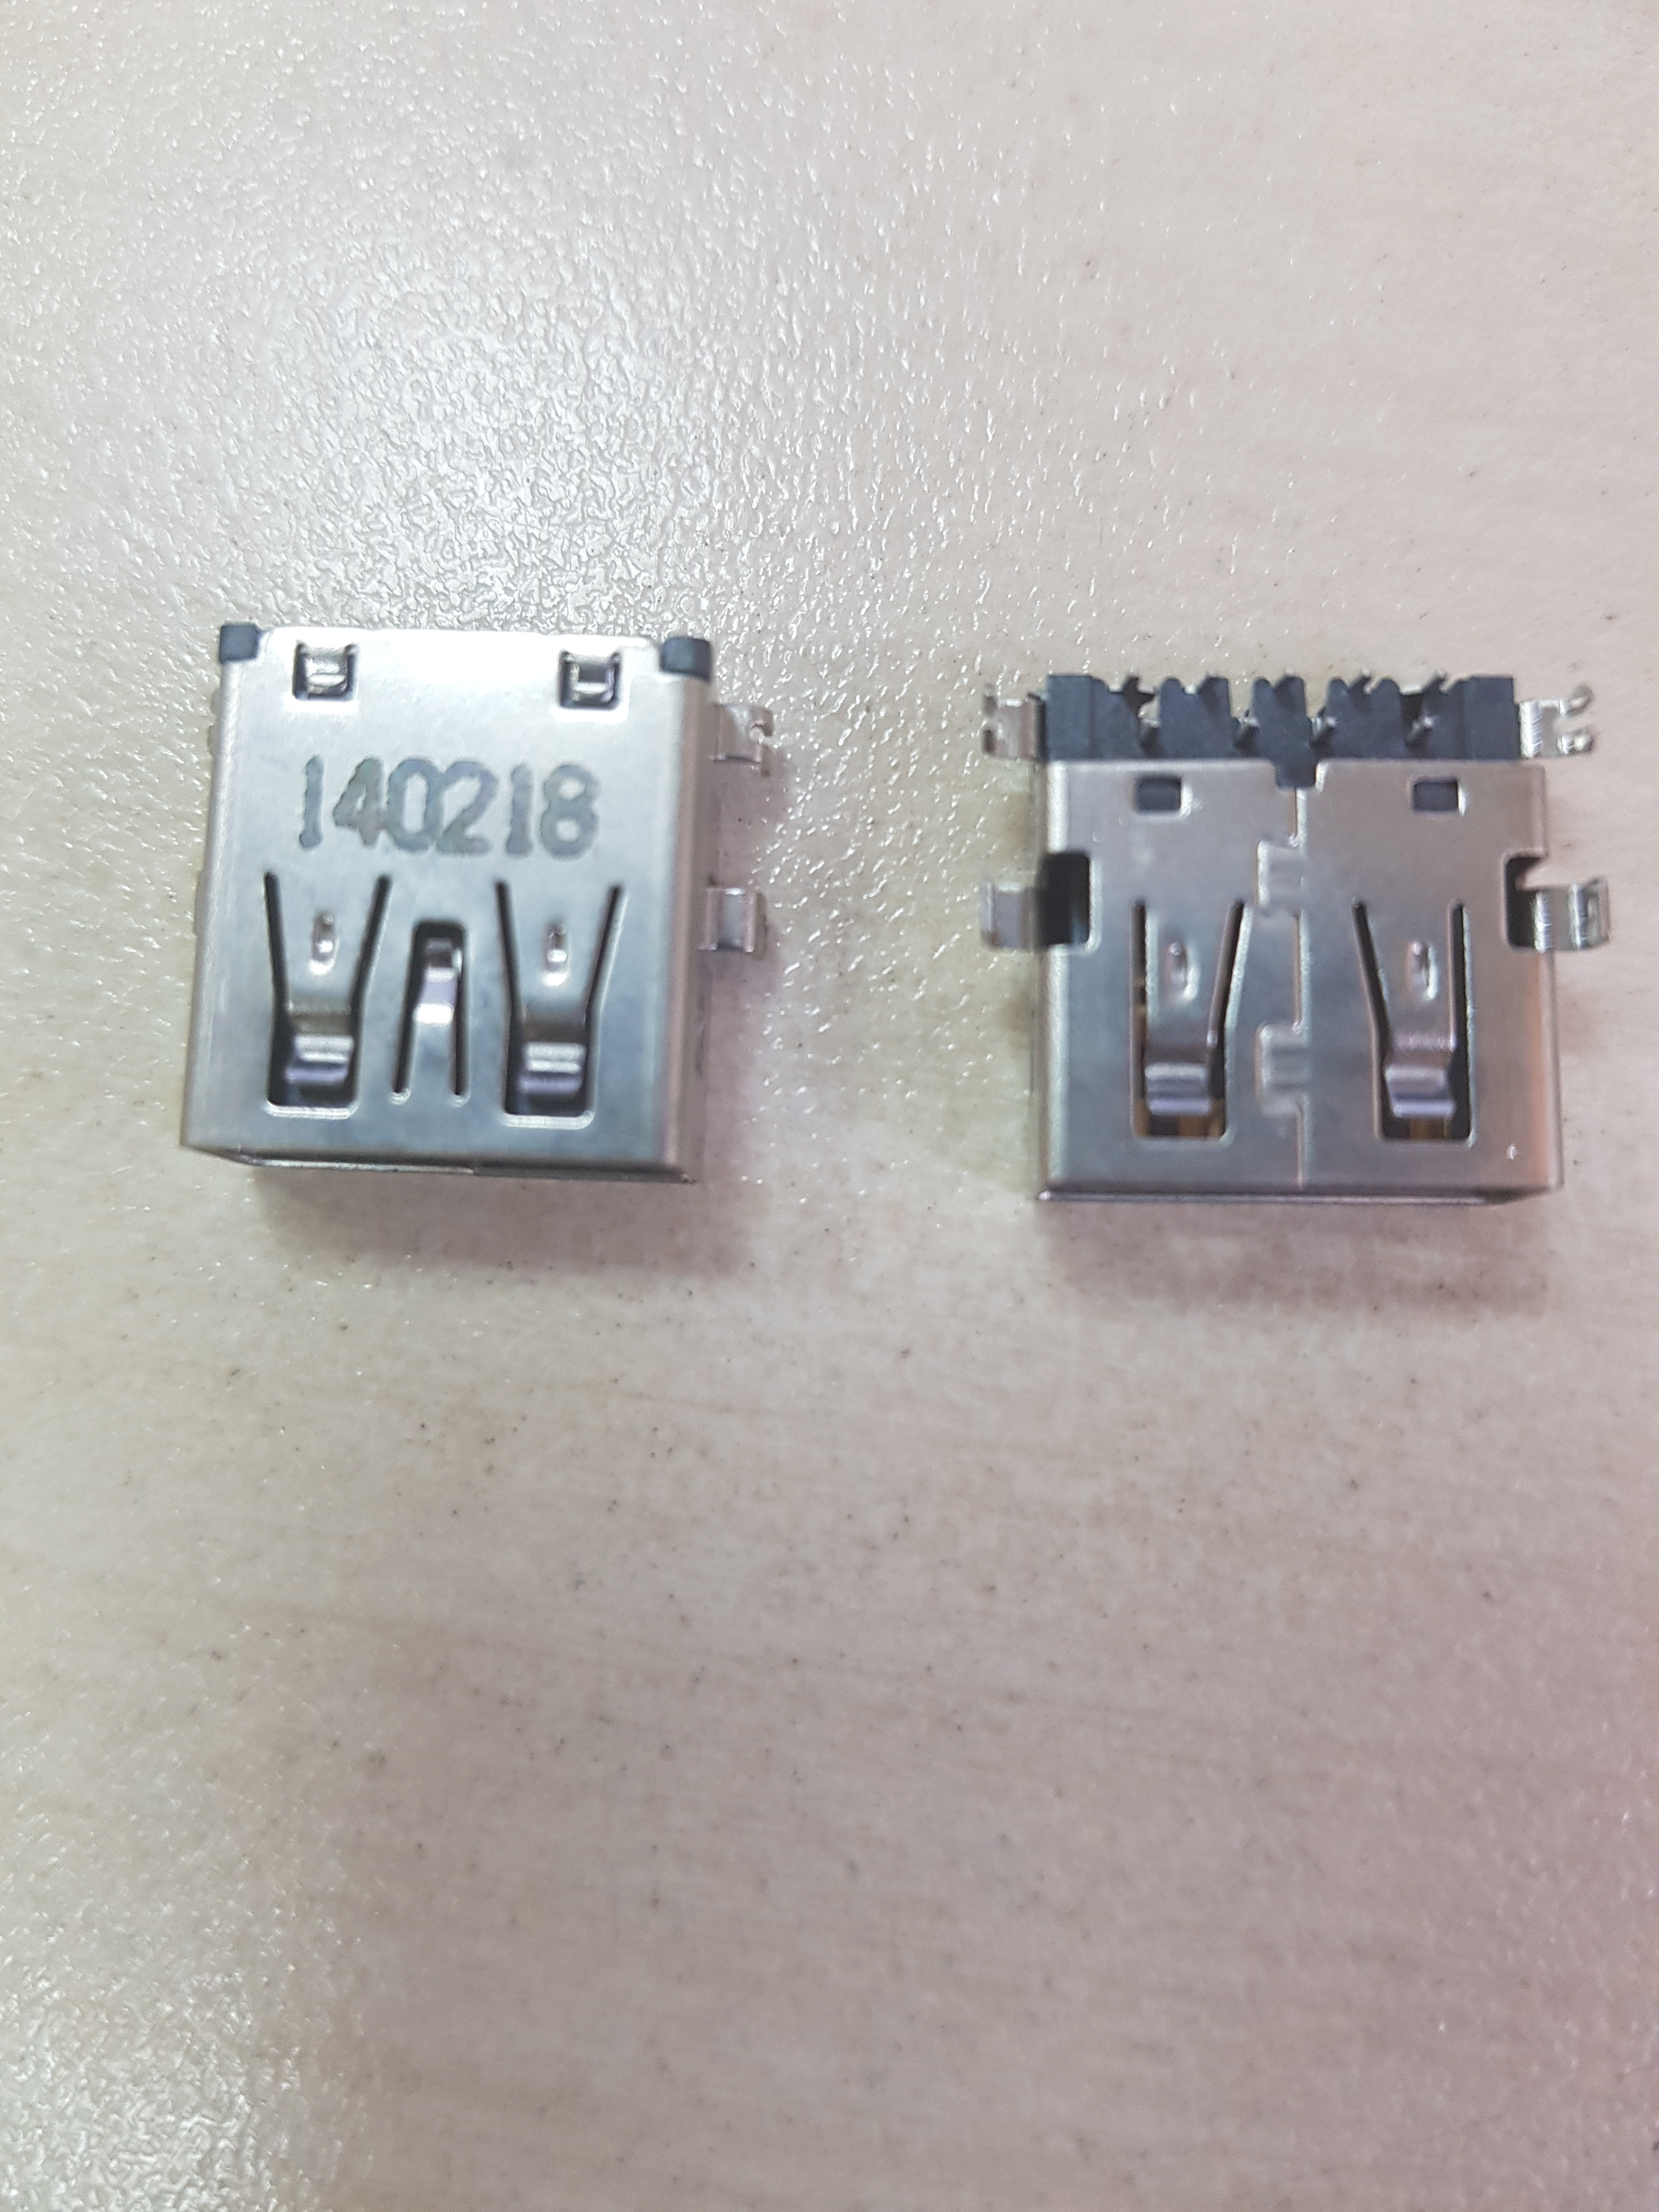  USB 3.0, p/n 140218, 40,   Toshiba C55D-A, C50, C50T, C50D, C55, C55T, C55D, S-7000